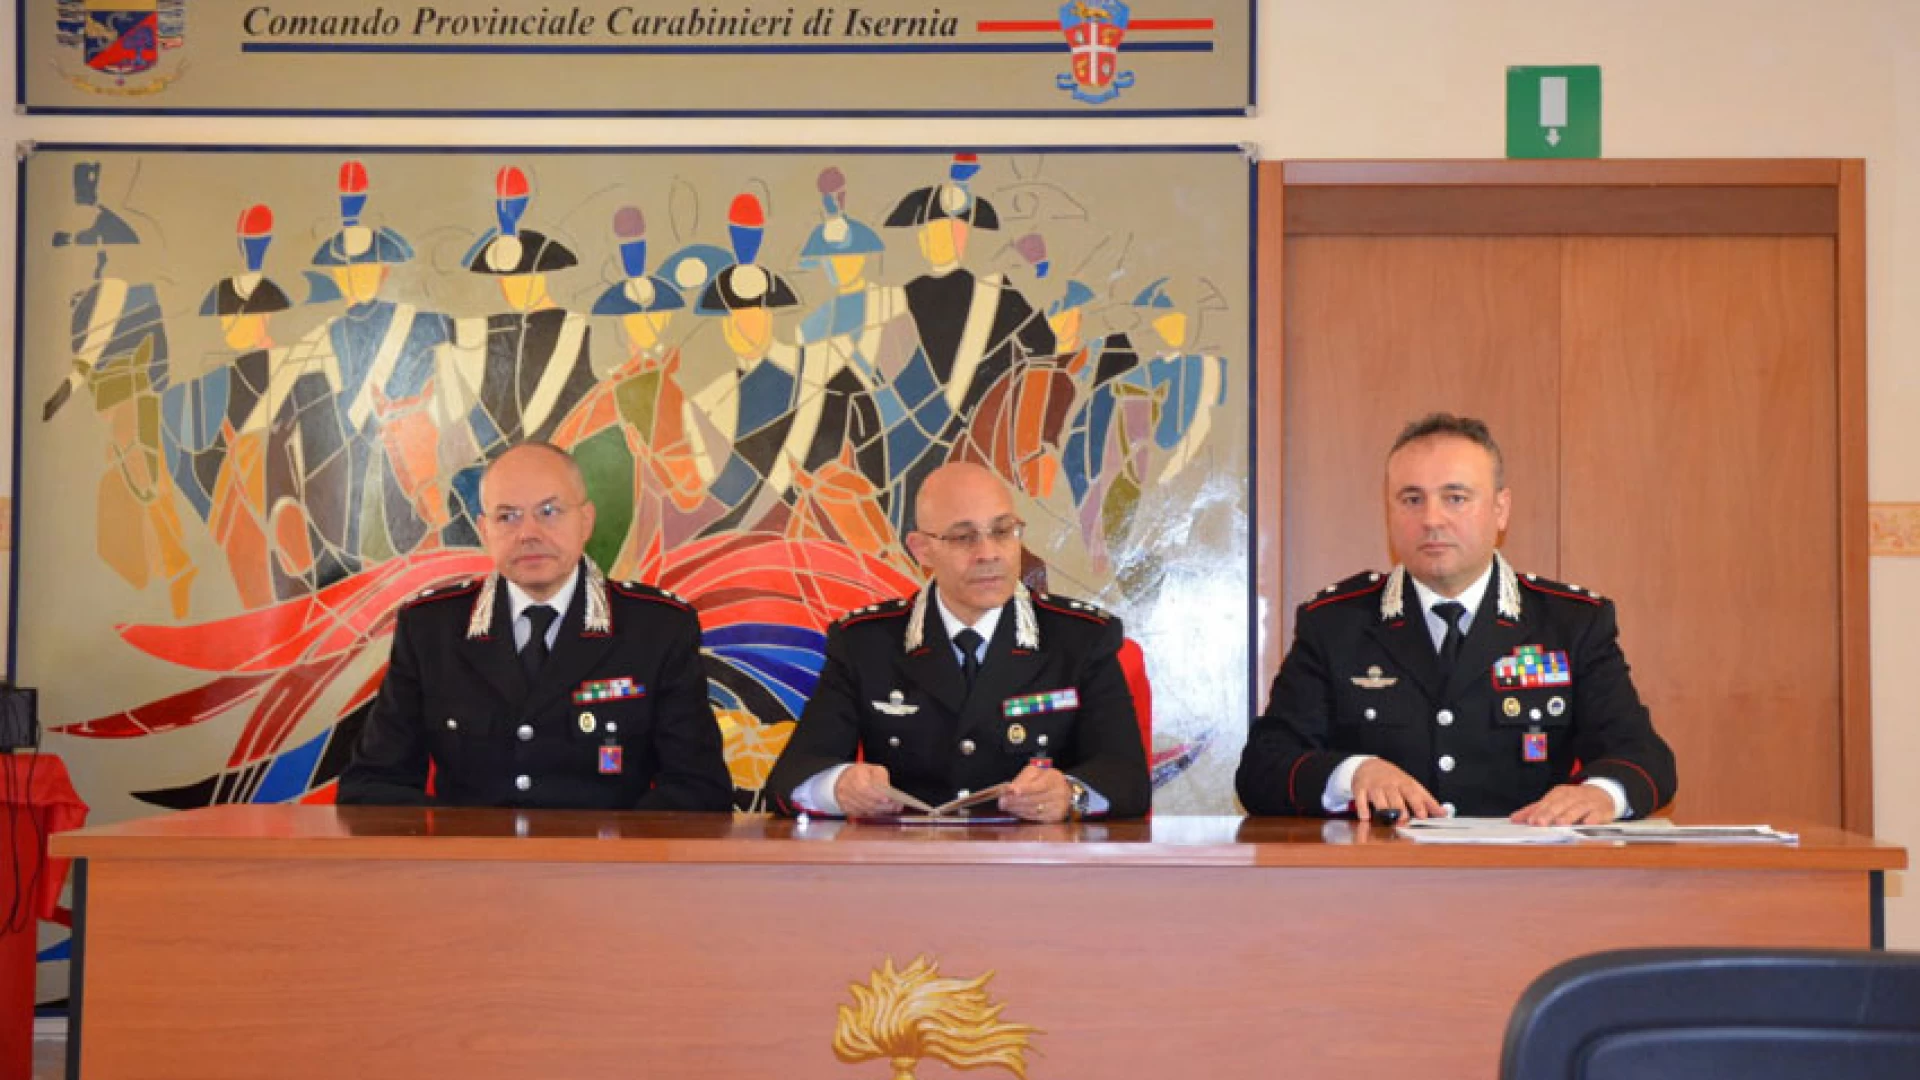 Isernia: Anniversario fondazione dell’Arma dei Carabinieri. Il bilancio delle attività operative condotte dall’arma sul territorio.